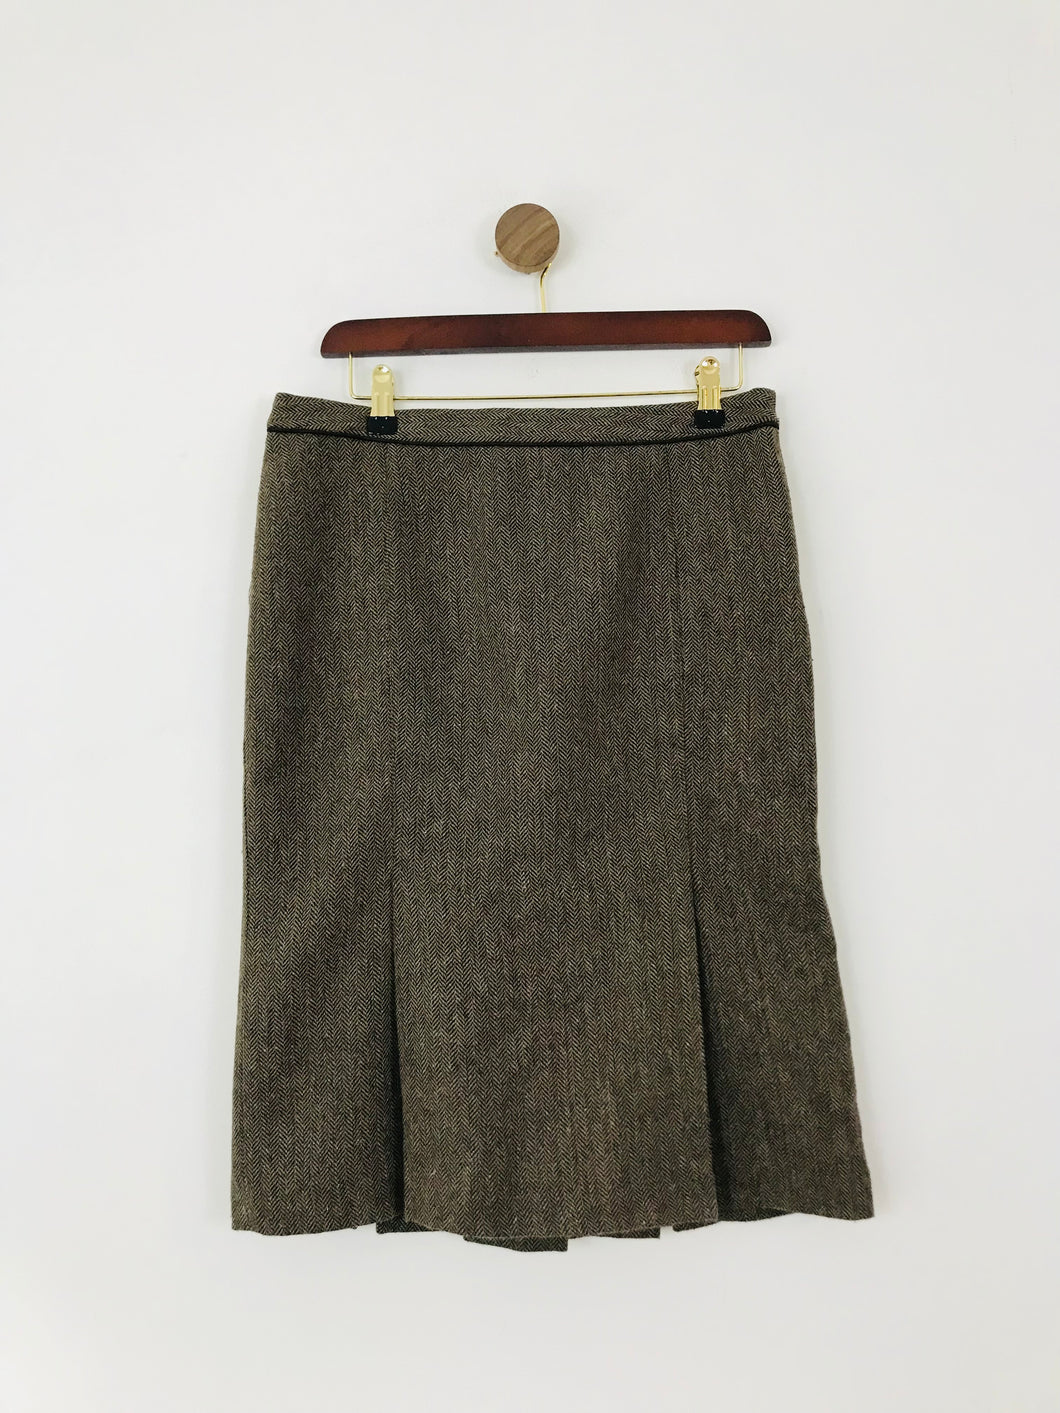 Zara Women's Faux Tweed Pleated Pencil Skirt | M UK10-12 | Brown